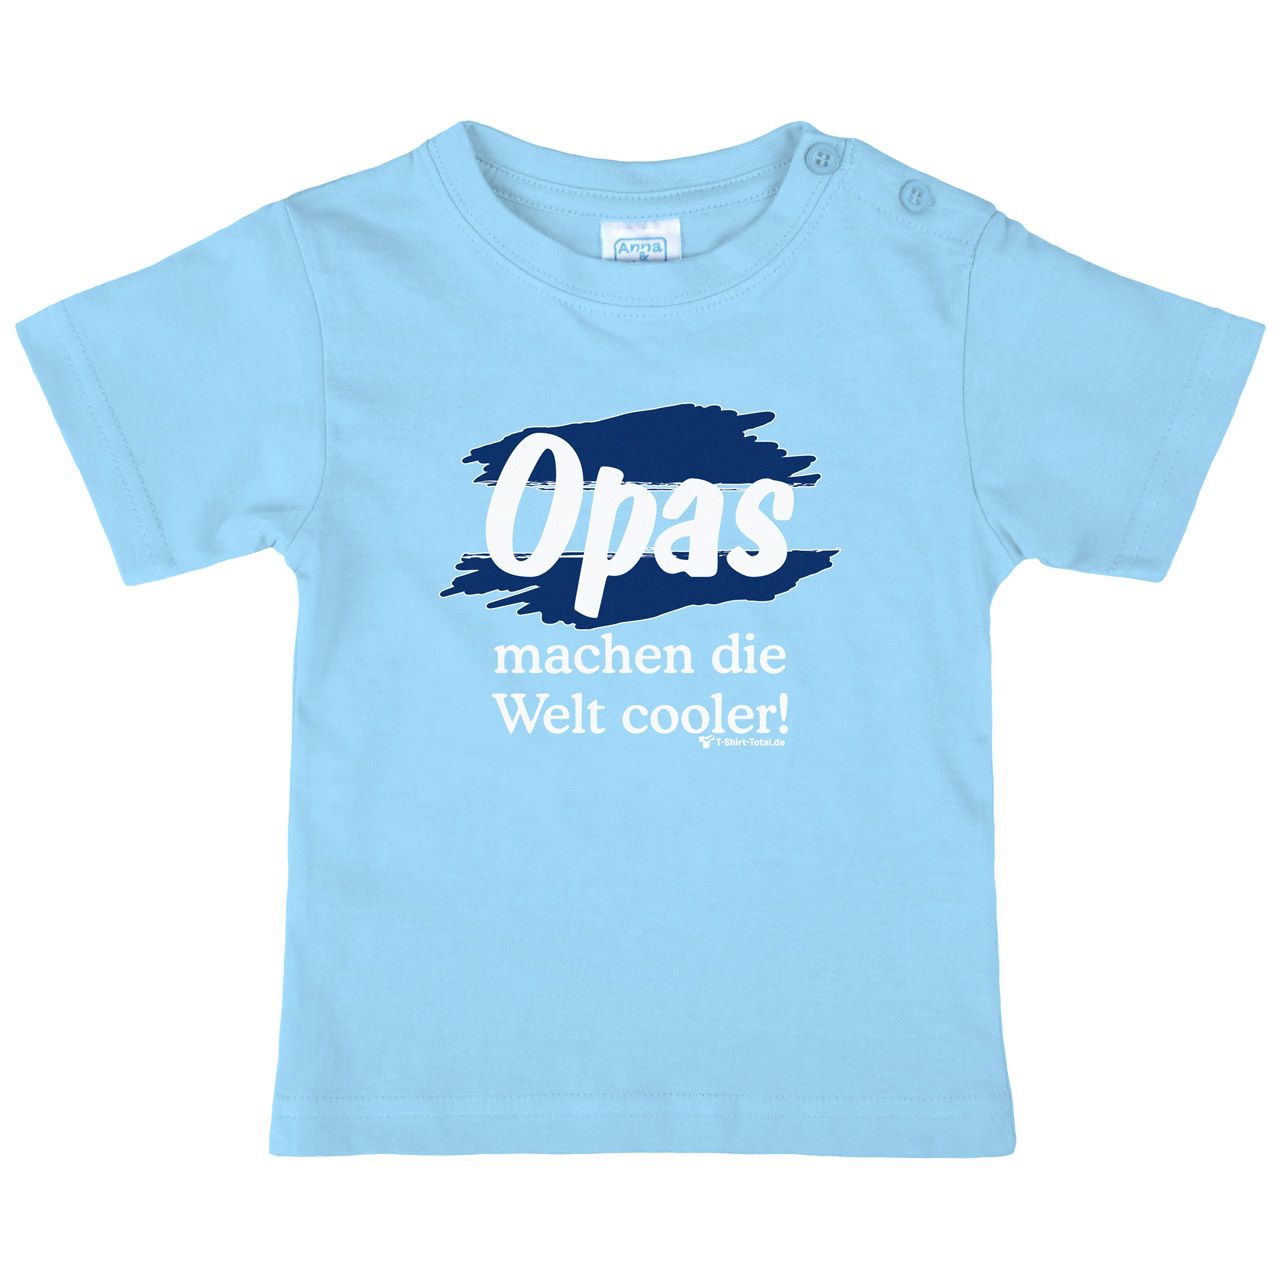 Welt cooler Opa Kinder T-Shirt hellblau 92